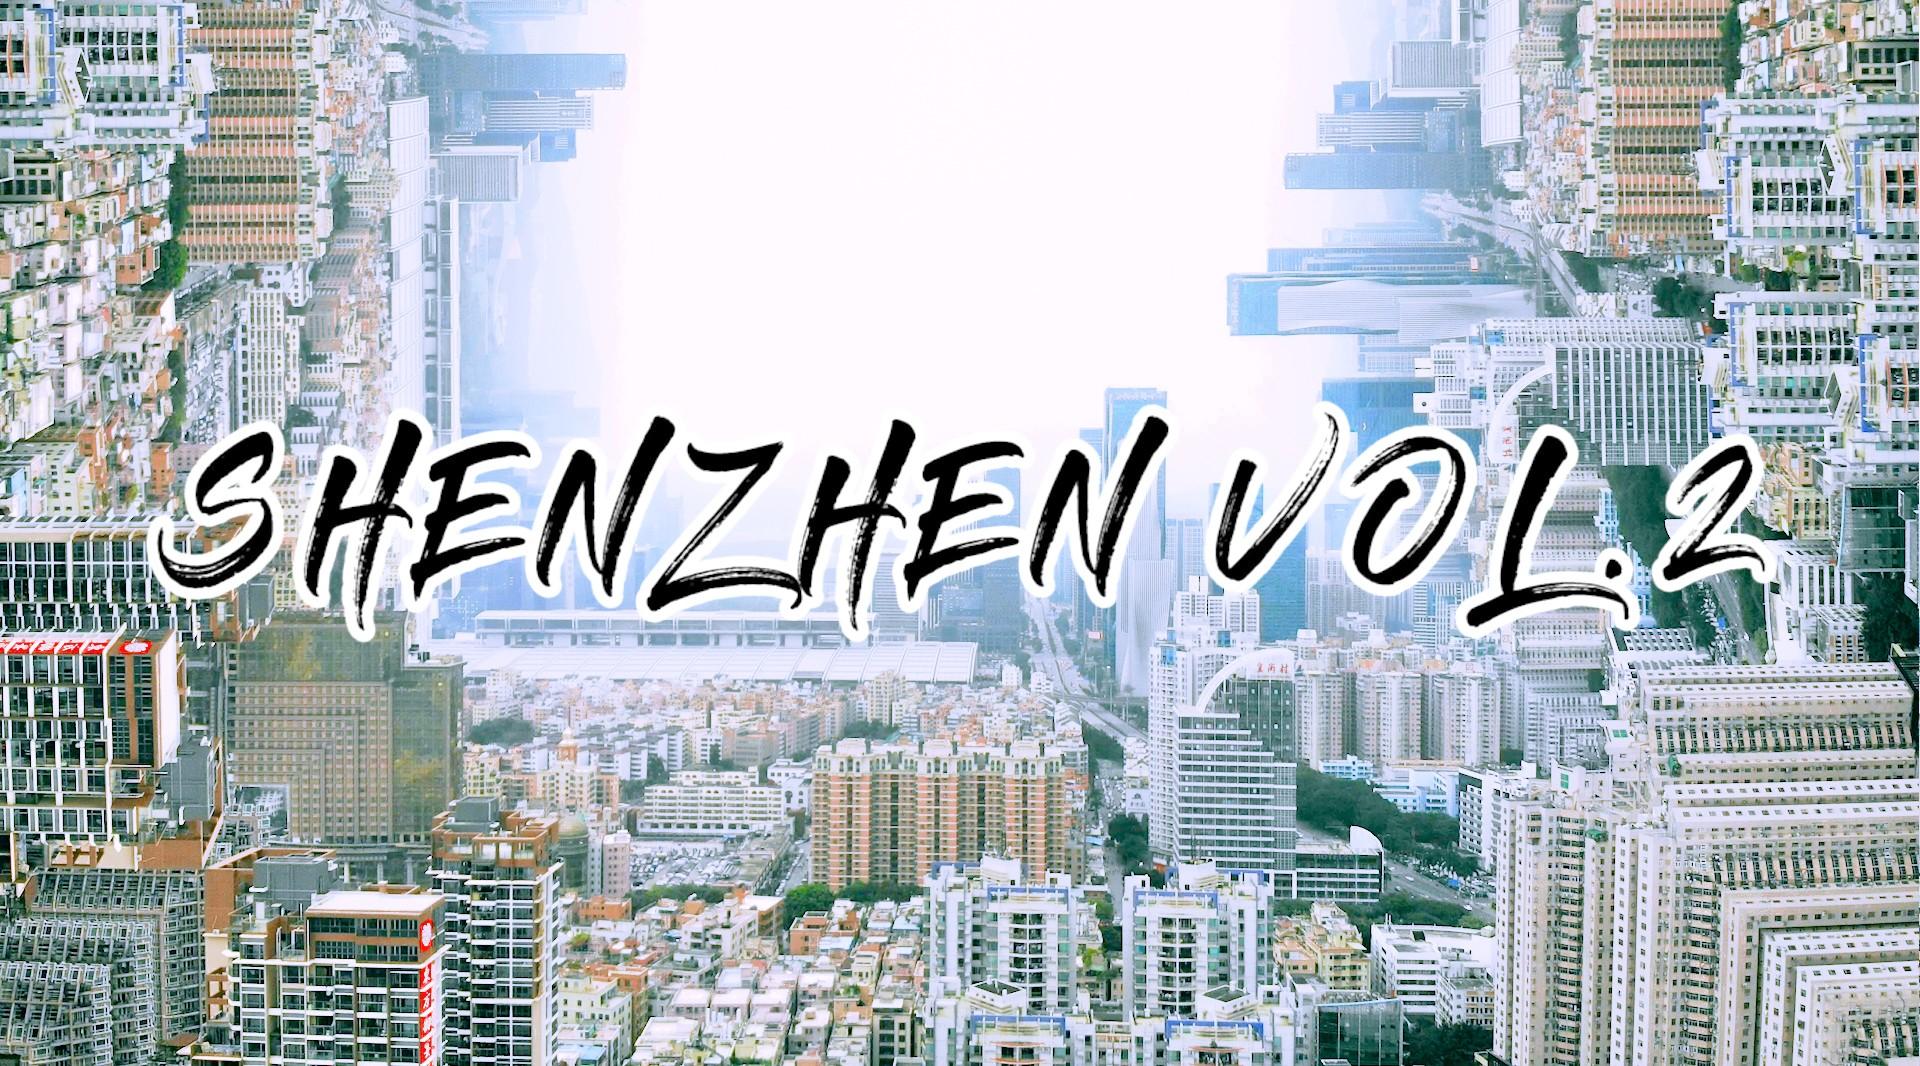 Urban exploration in shenzhen vol.2